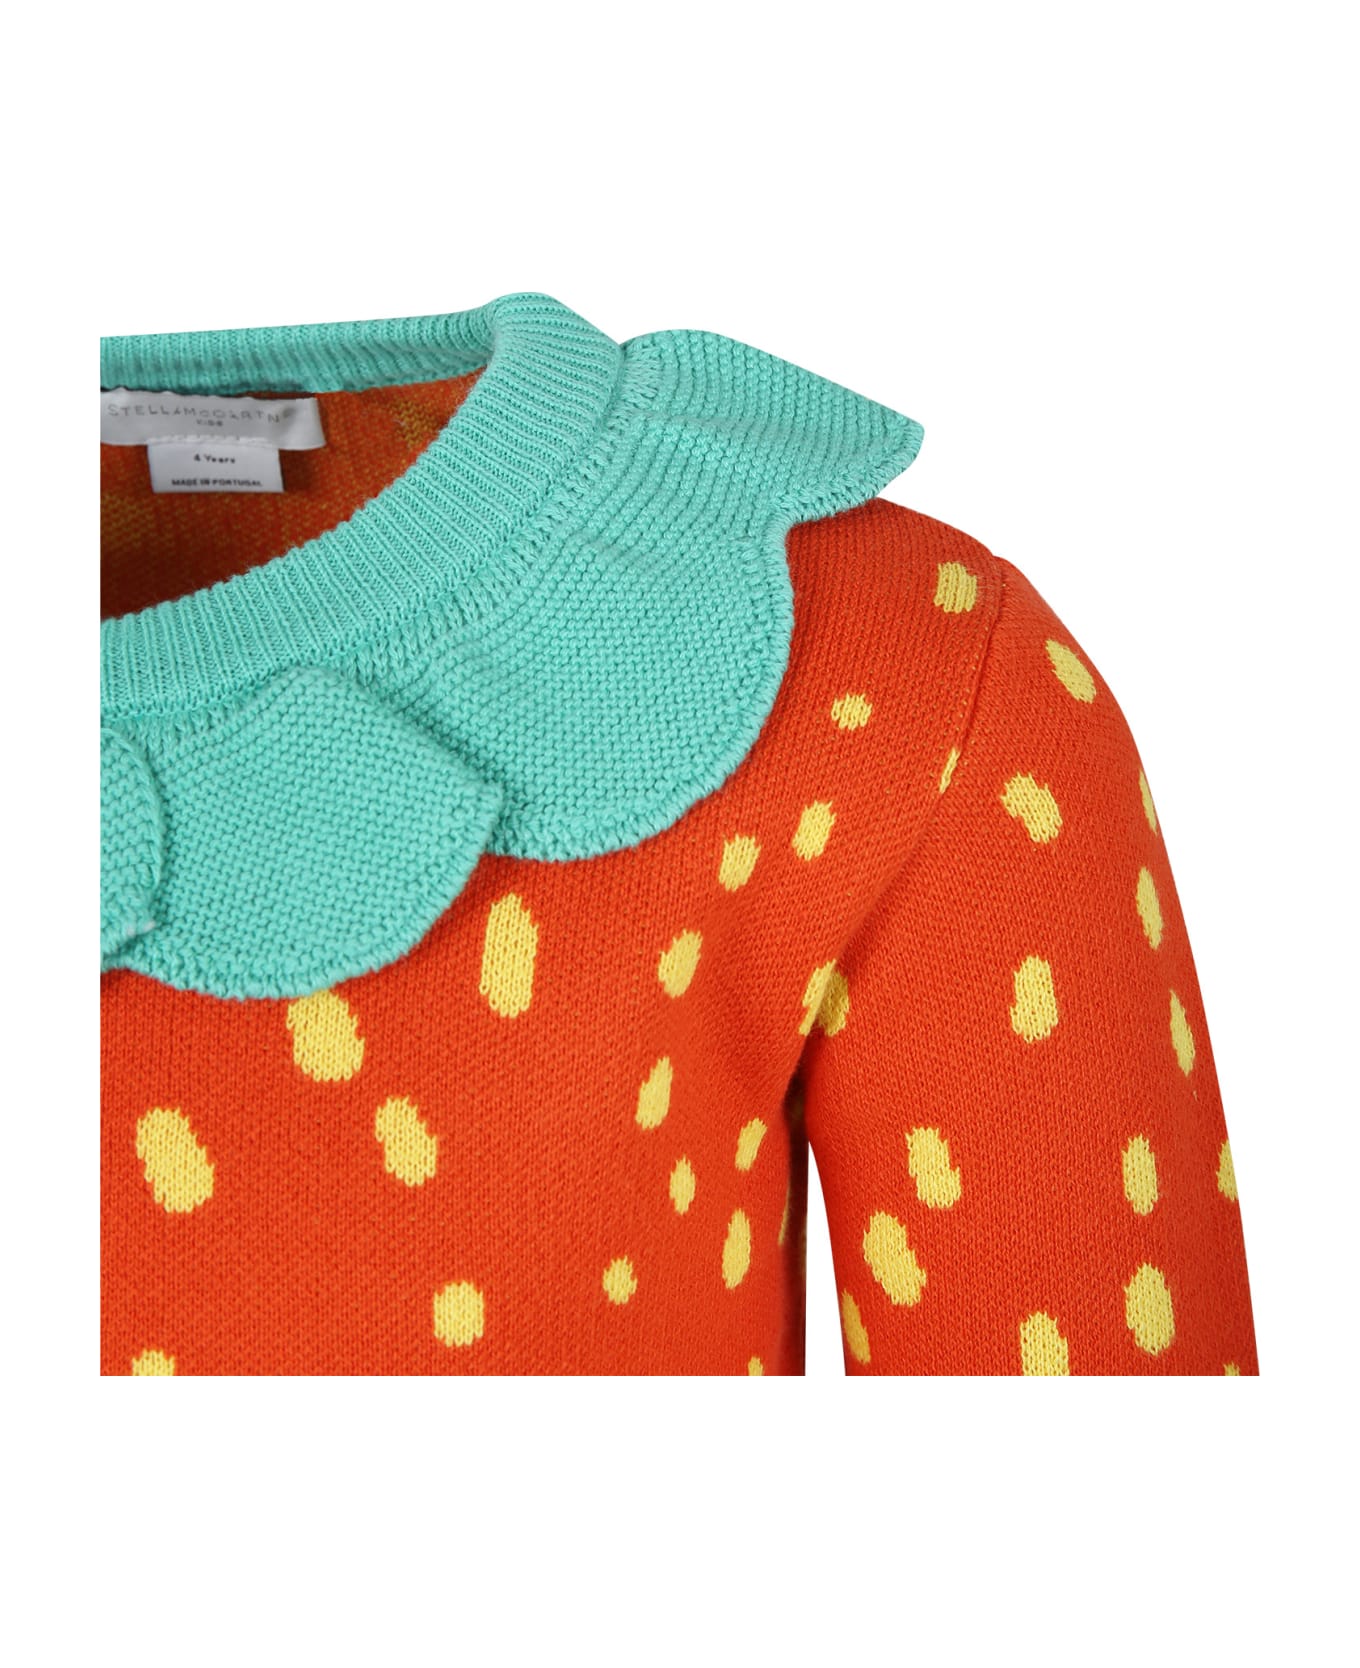 Stella McCartney Kids Red Sweater For Girl With All-over Print - Red ニットウェア＆スウェットシャツ